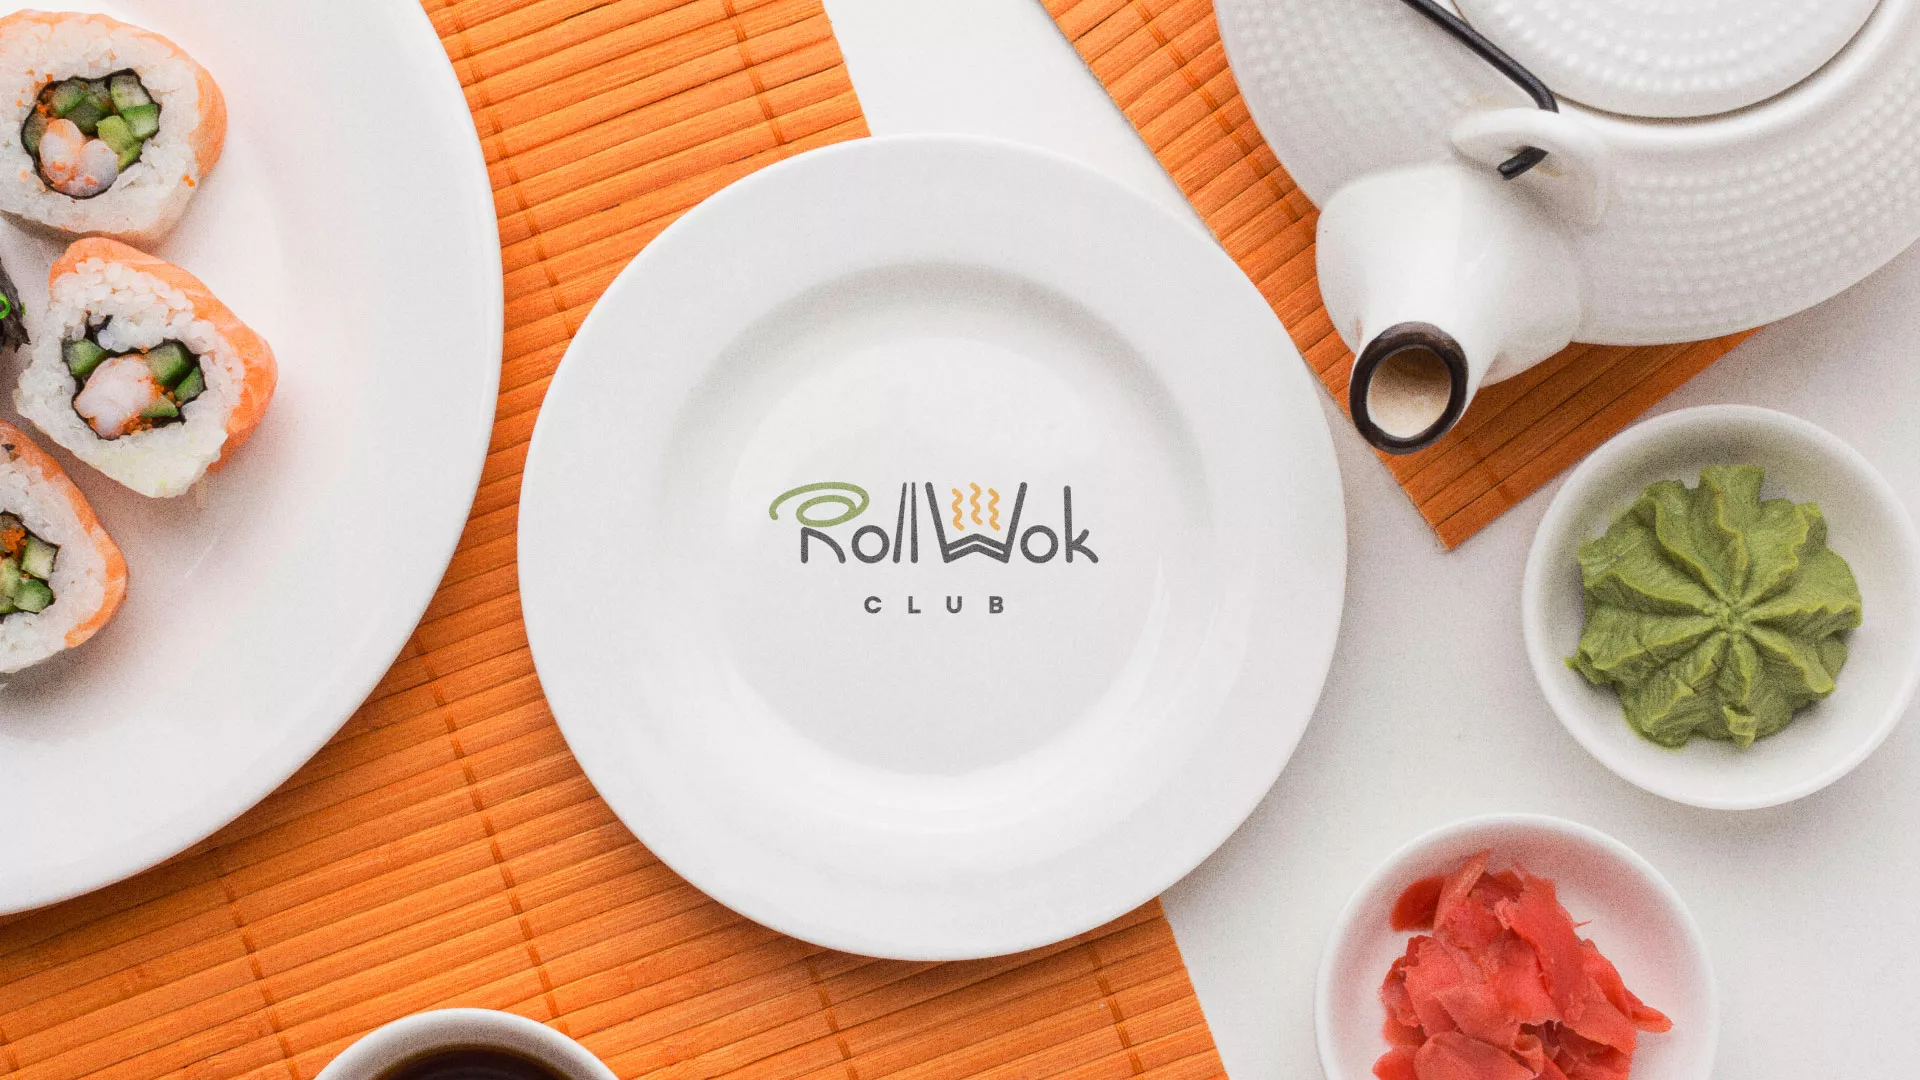 Разработка логотипа и фирменного стиля суши-бара «Roll Wok Club» в Вуктыле